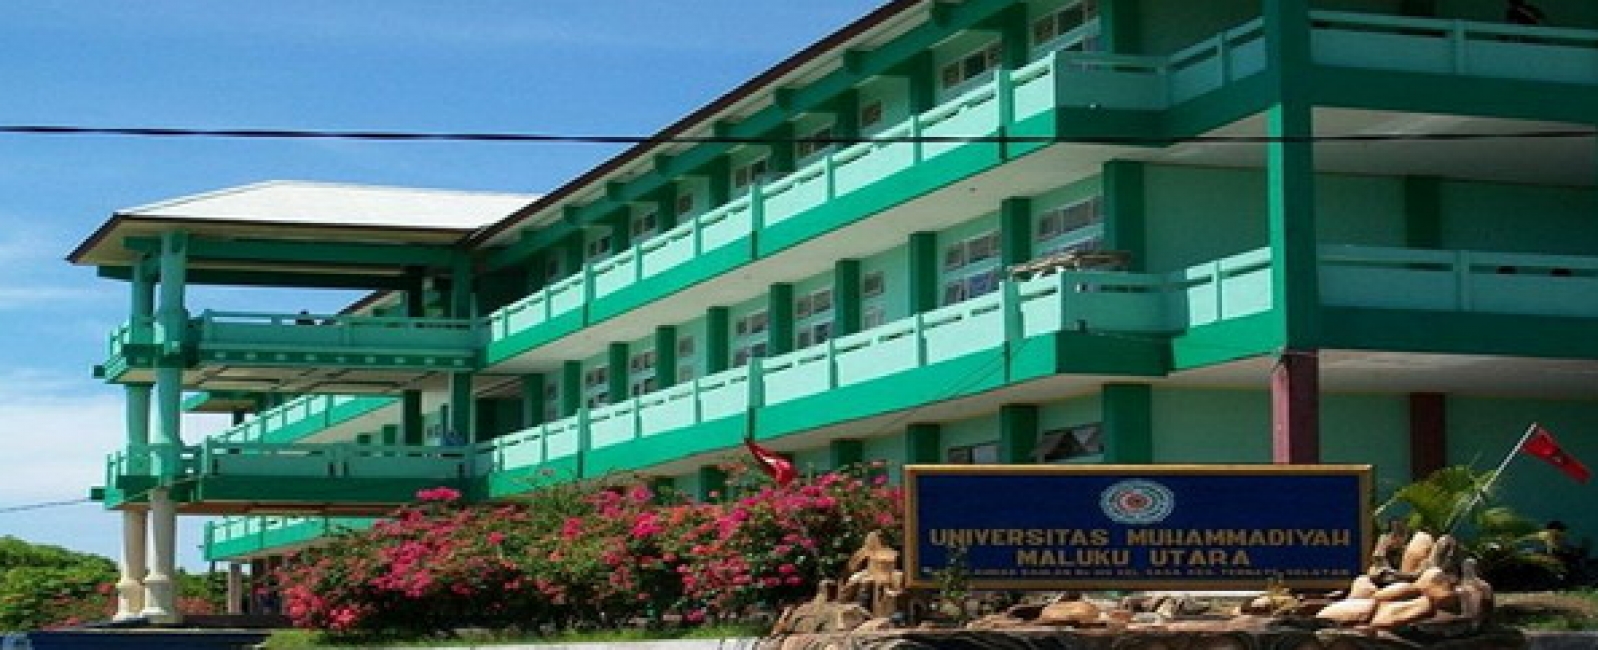 Pemprov Maluku Fasilitasi Lahan Untuk RS dan Universitas Muhammadiyah di Pulau Ambon